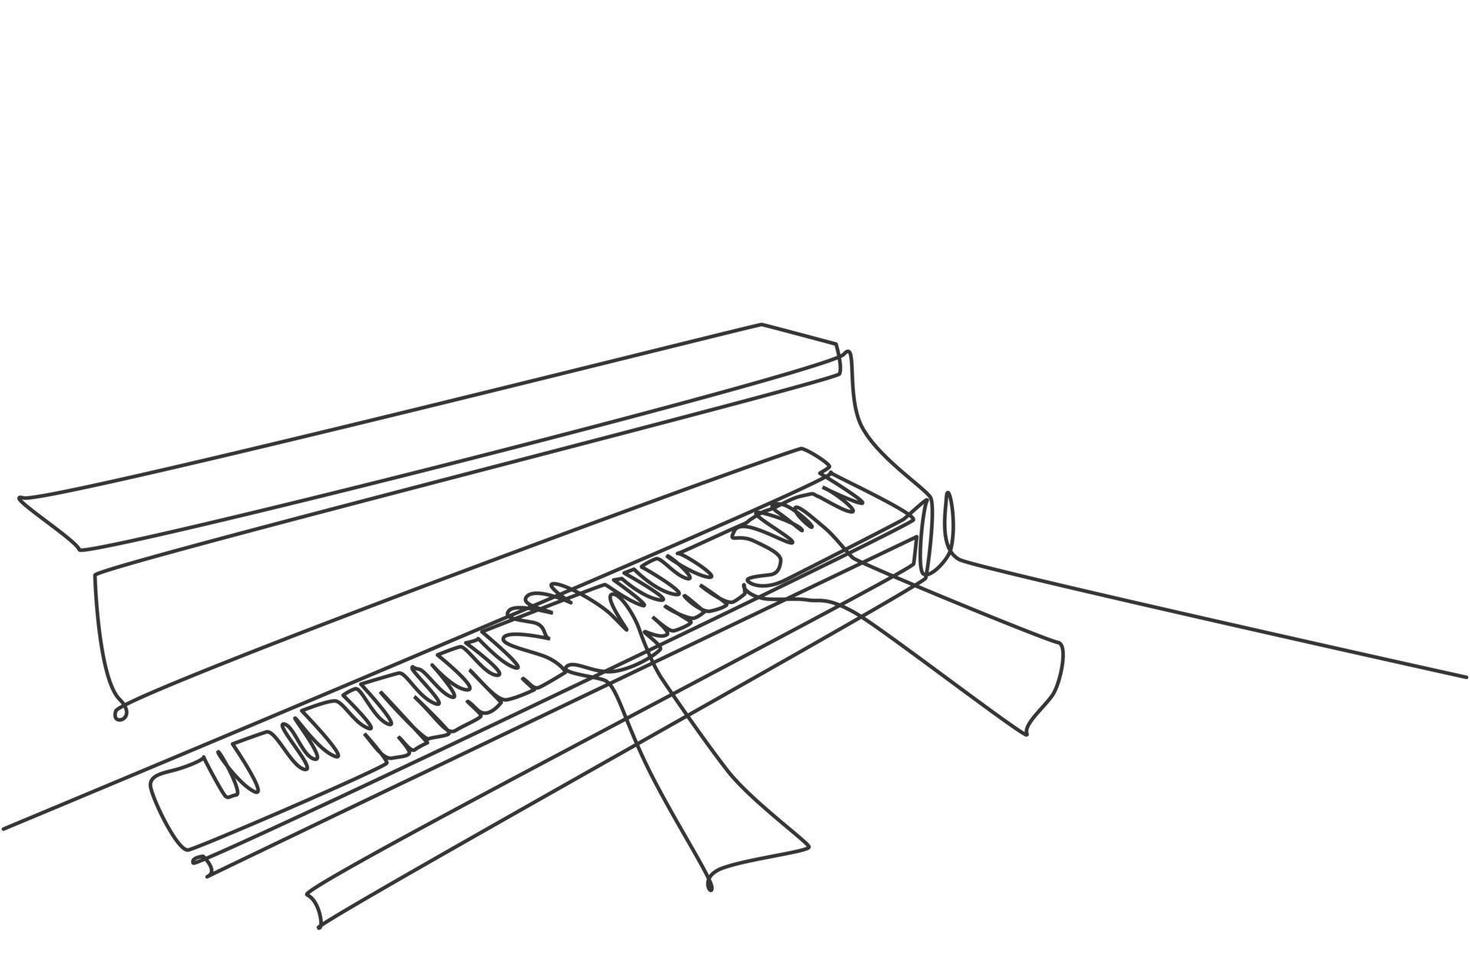 un dessin au trait continu d'un jeune pianiste heureux jouant du piano à queue classique en vue latérale. Concept de performance de l'artiste musicien ligne unique dessiner illustration graphique vectorielle de conception vecteur